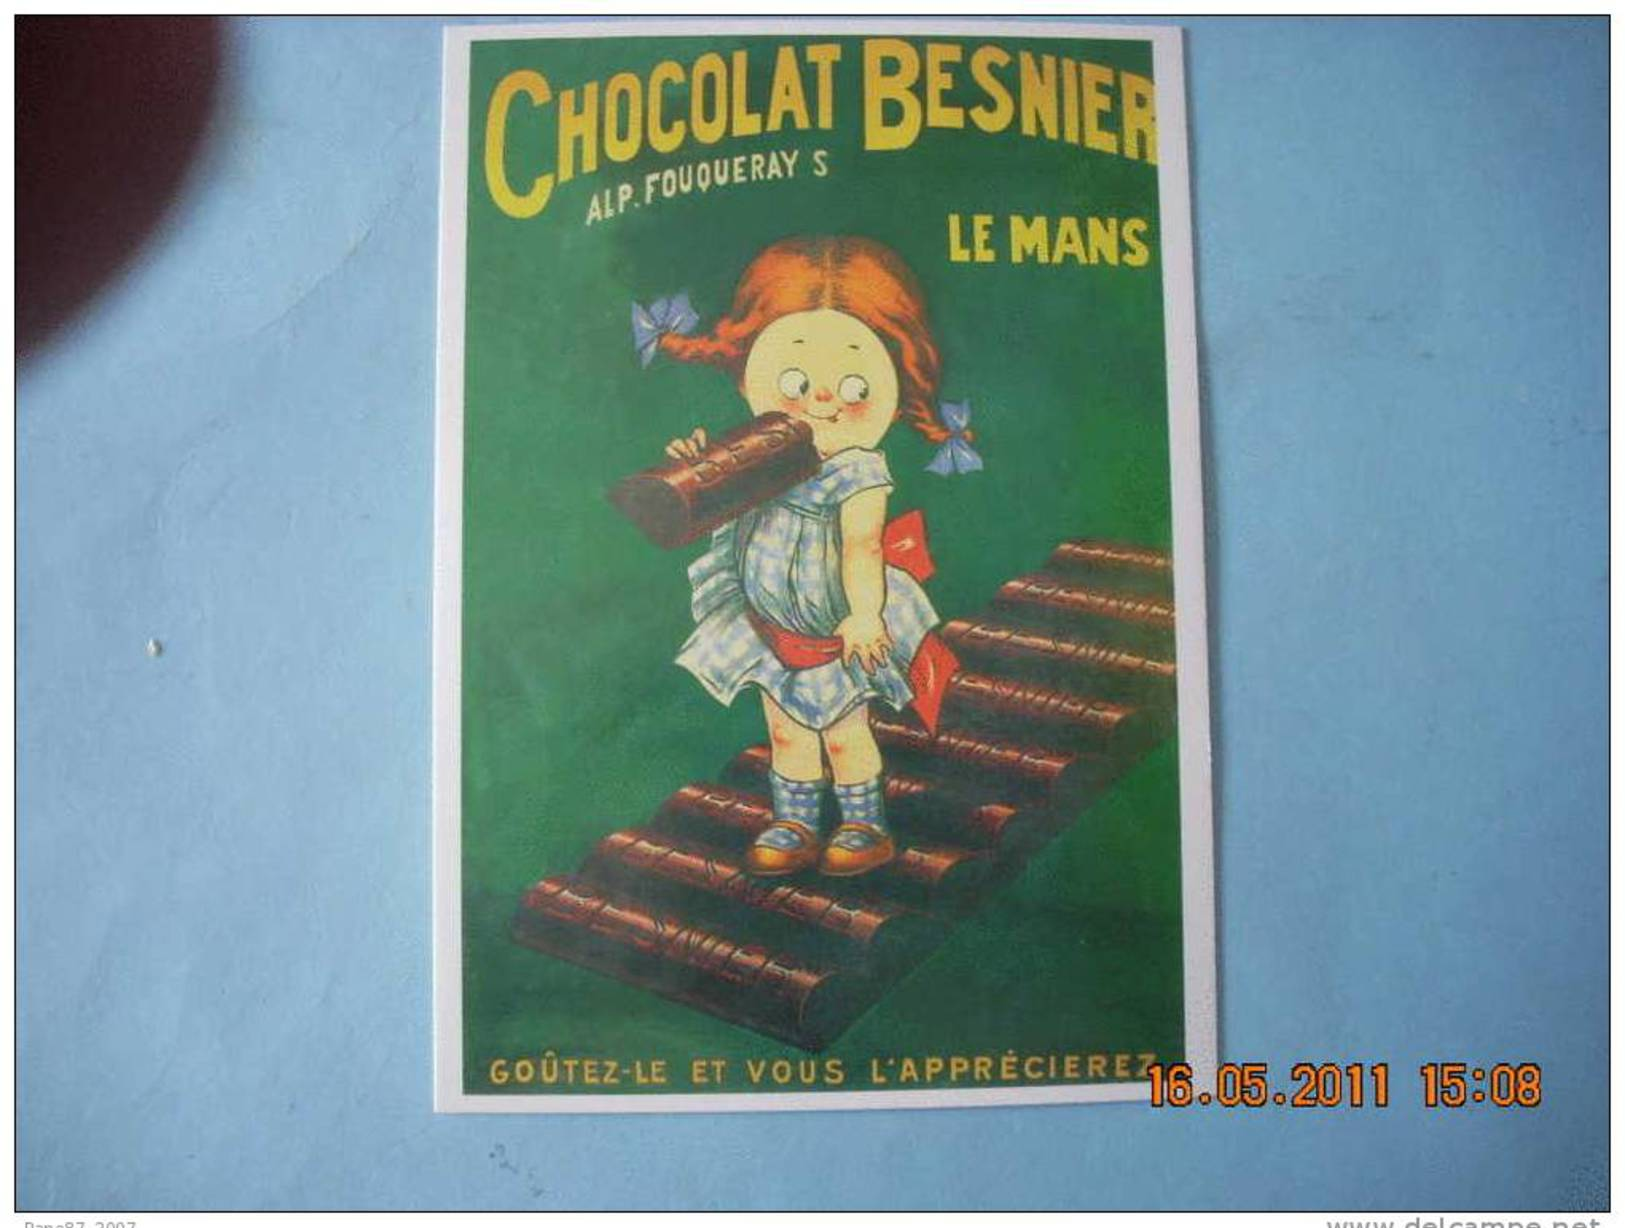 CLOUET   10 440  CHOCOLAT BESNIER FILLETTE ALP FOUQUERAY S  LE MANS - Advertising